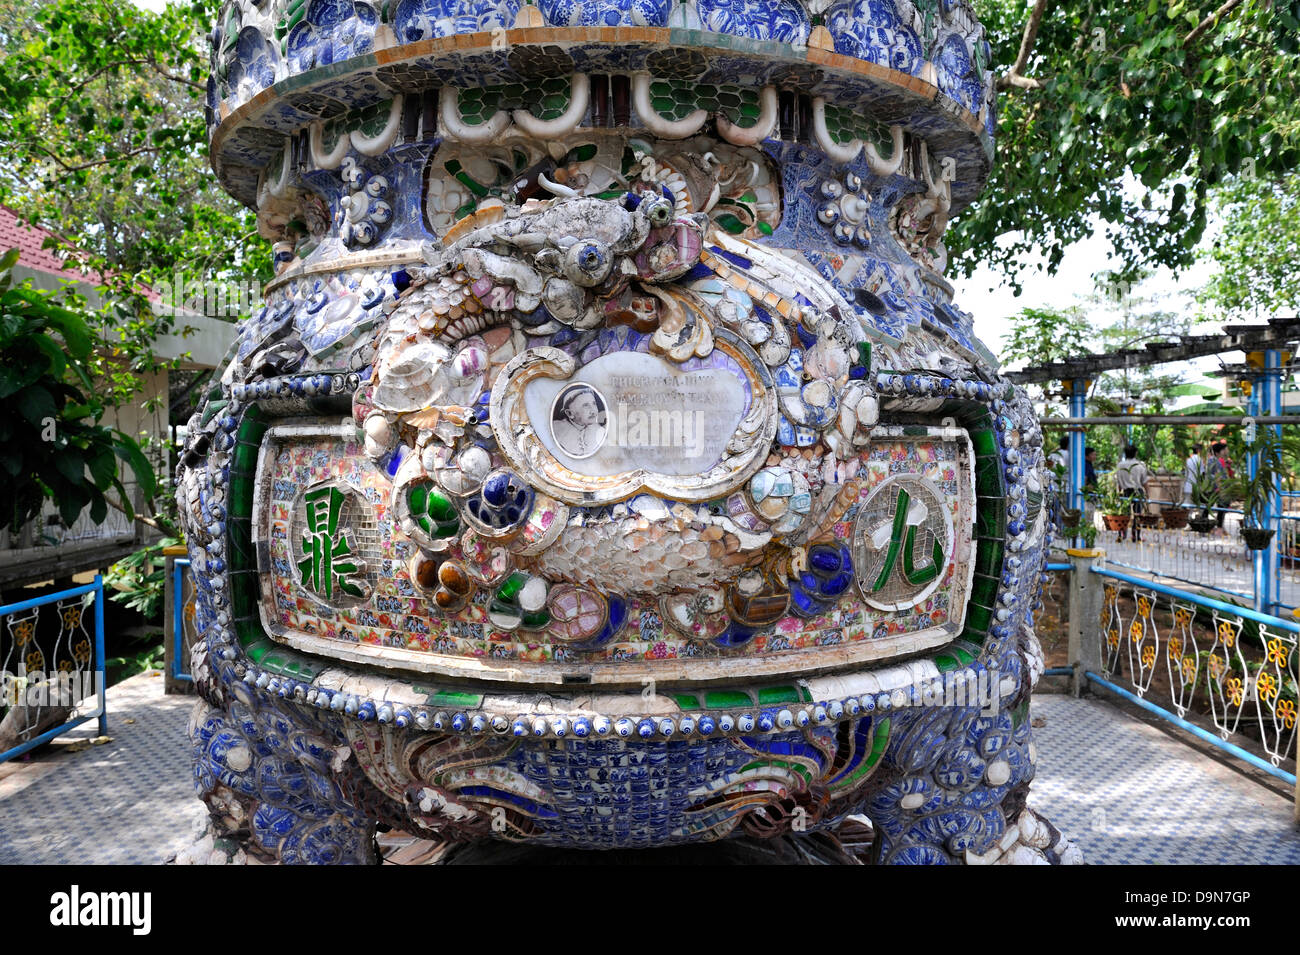 Mosaik-bedeckte Urne zum Gedenken an das Leben und Werk des Mönches Kokosnuss (Dao Dua), auf der Insel Con Phung. Mekong-Fluss, Vietnam Stockfoto